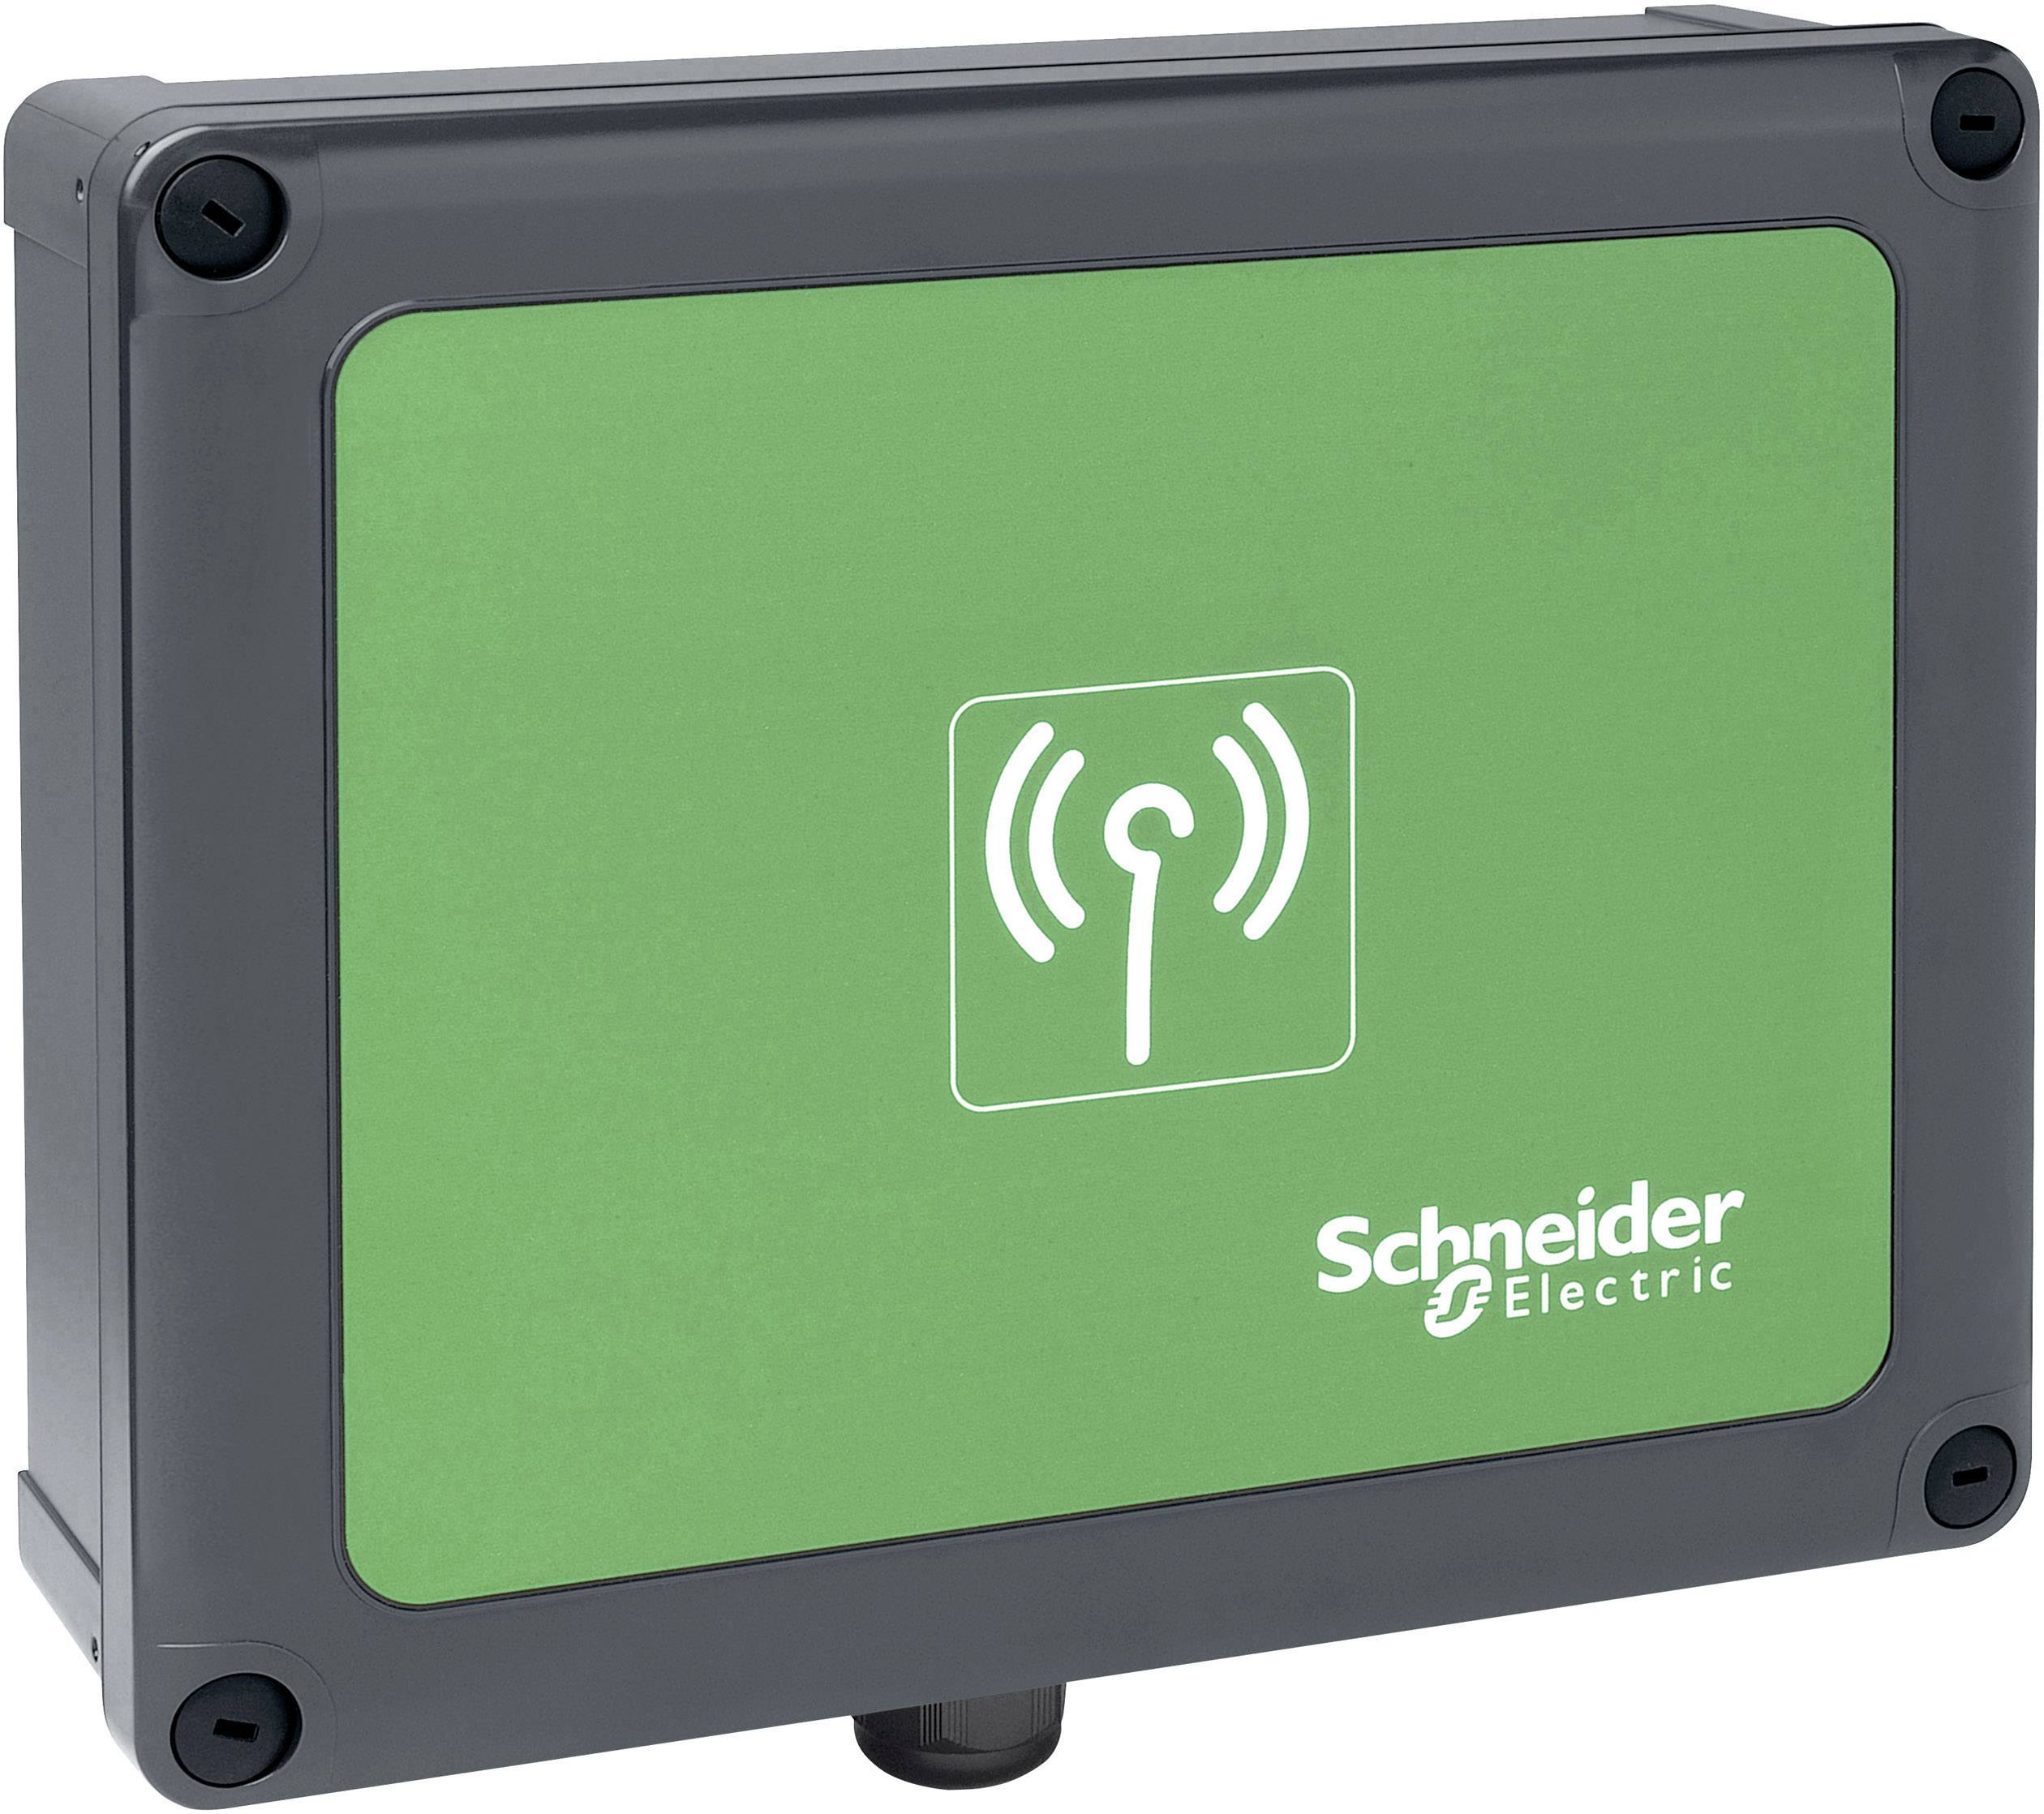 Купить станцию электрическую. Комплектующие для устройств управления и сигнализации Schneider Electric zarb18w. Schneider wm1 400. WM-18. Schneider wm1 400 Интерфейс.